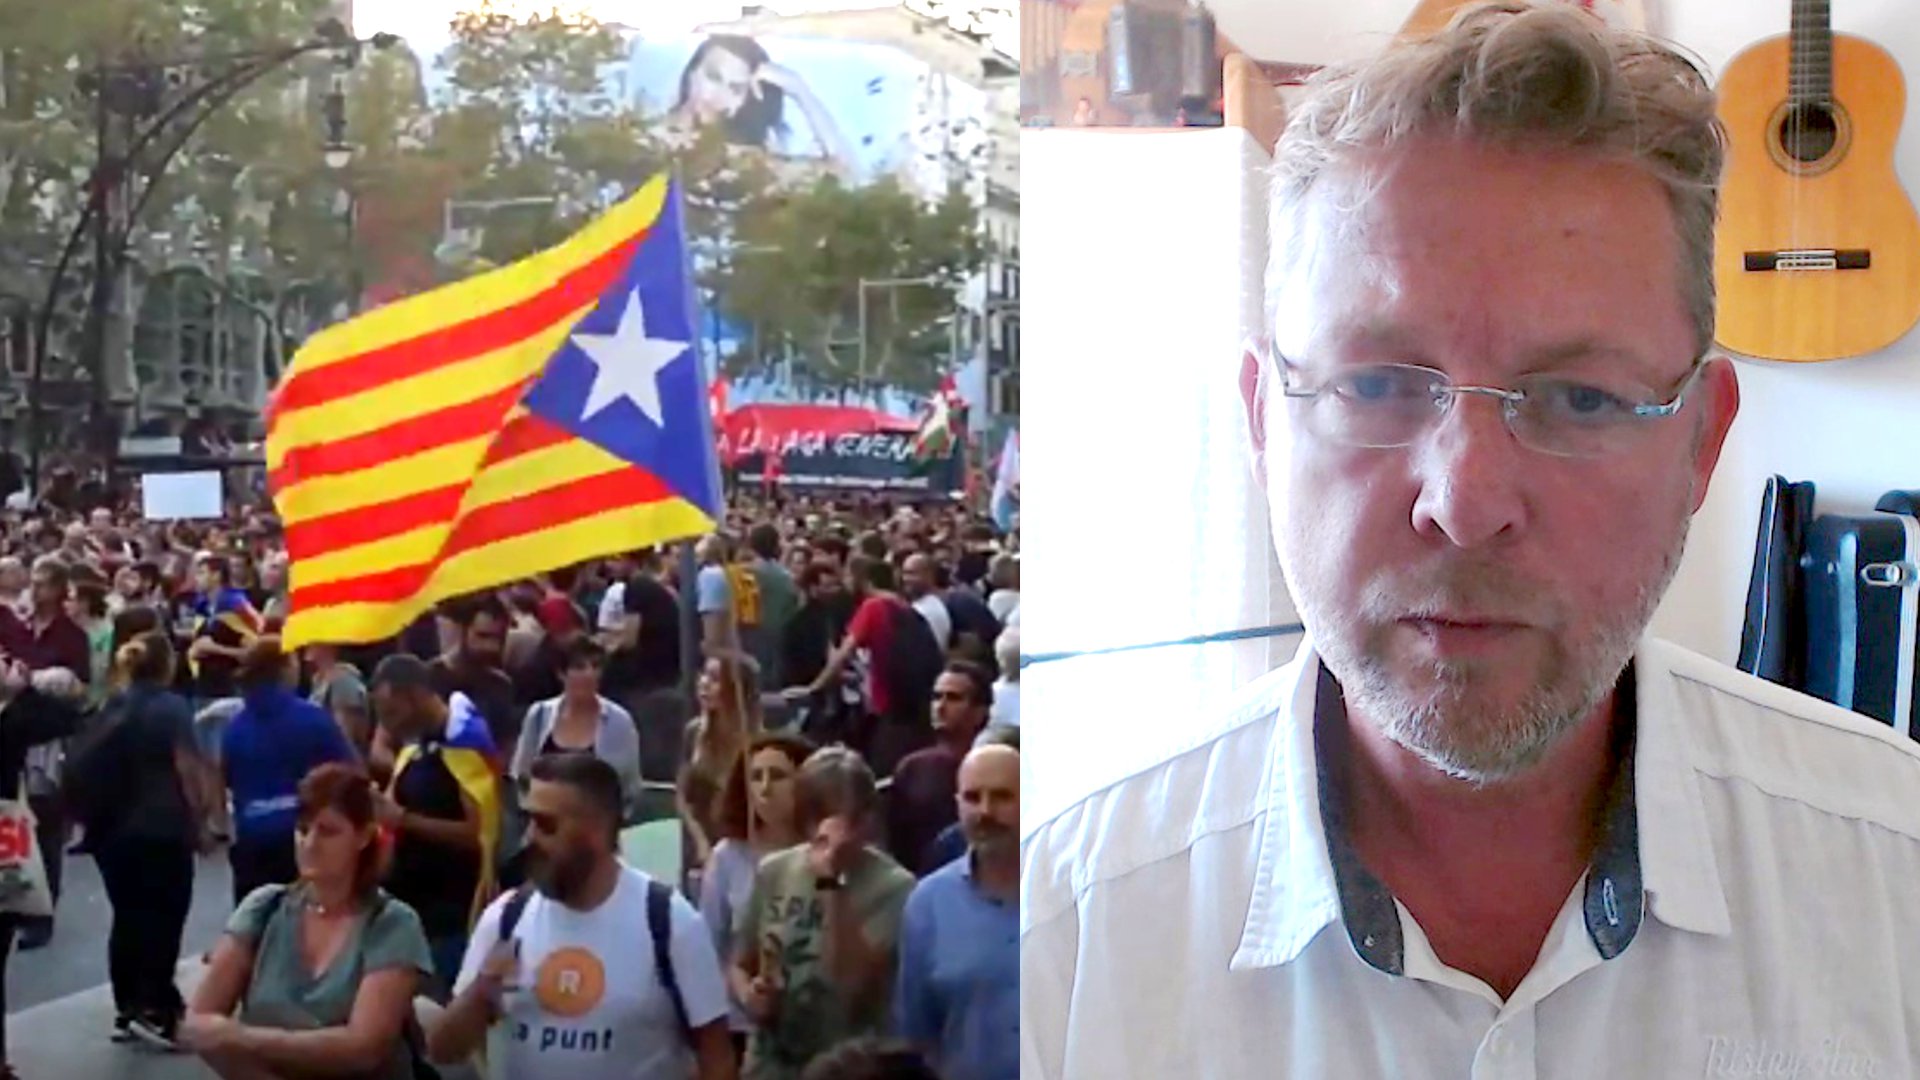 "Das macht mir Angst!" - Interview zur Krise in Katalonien